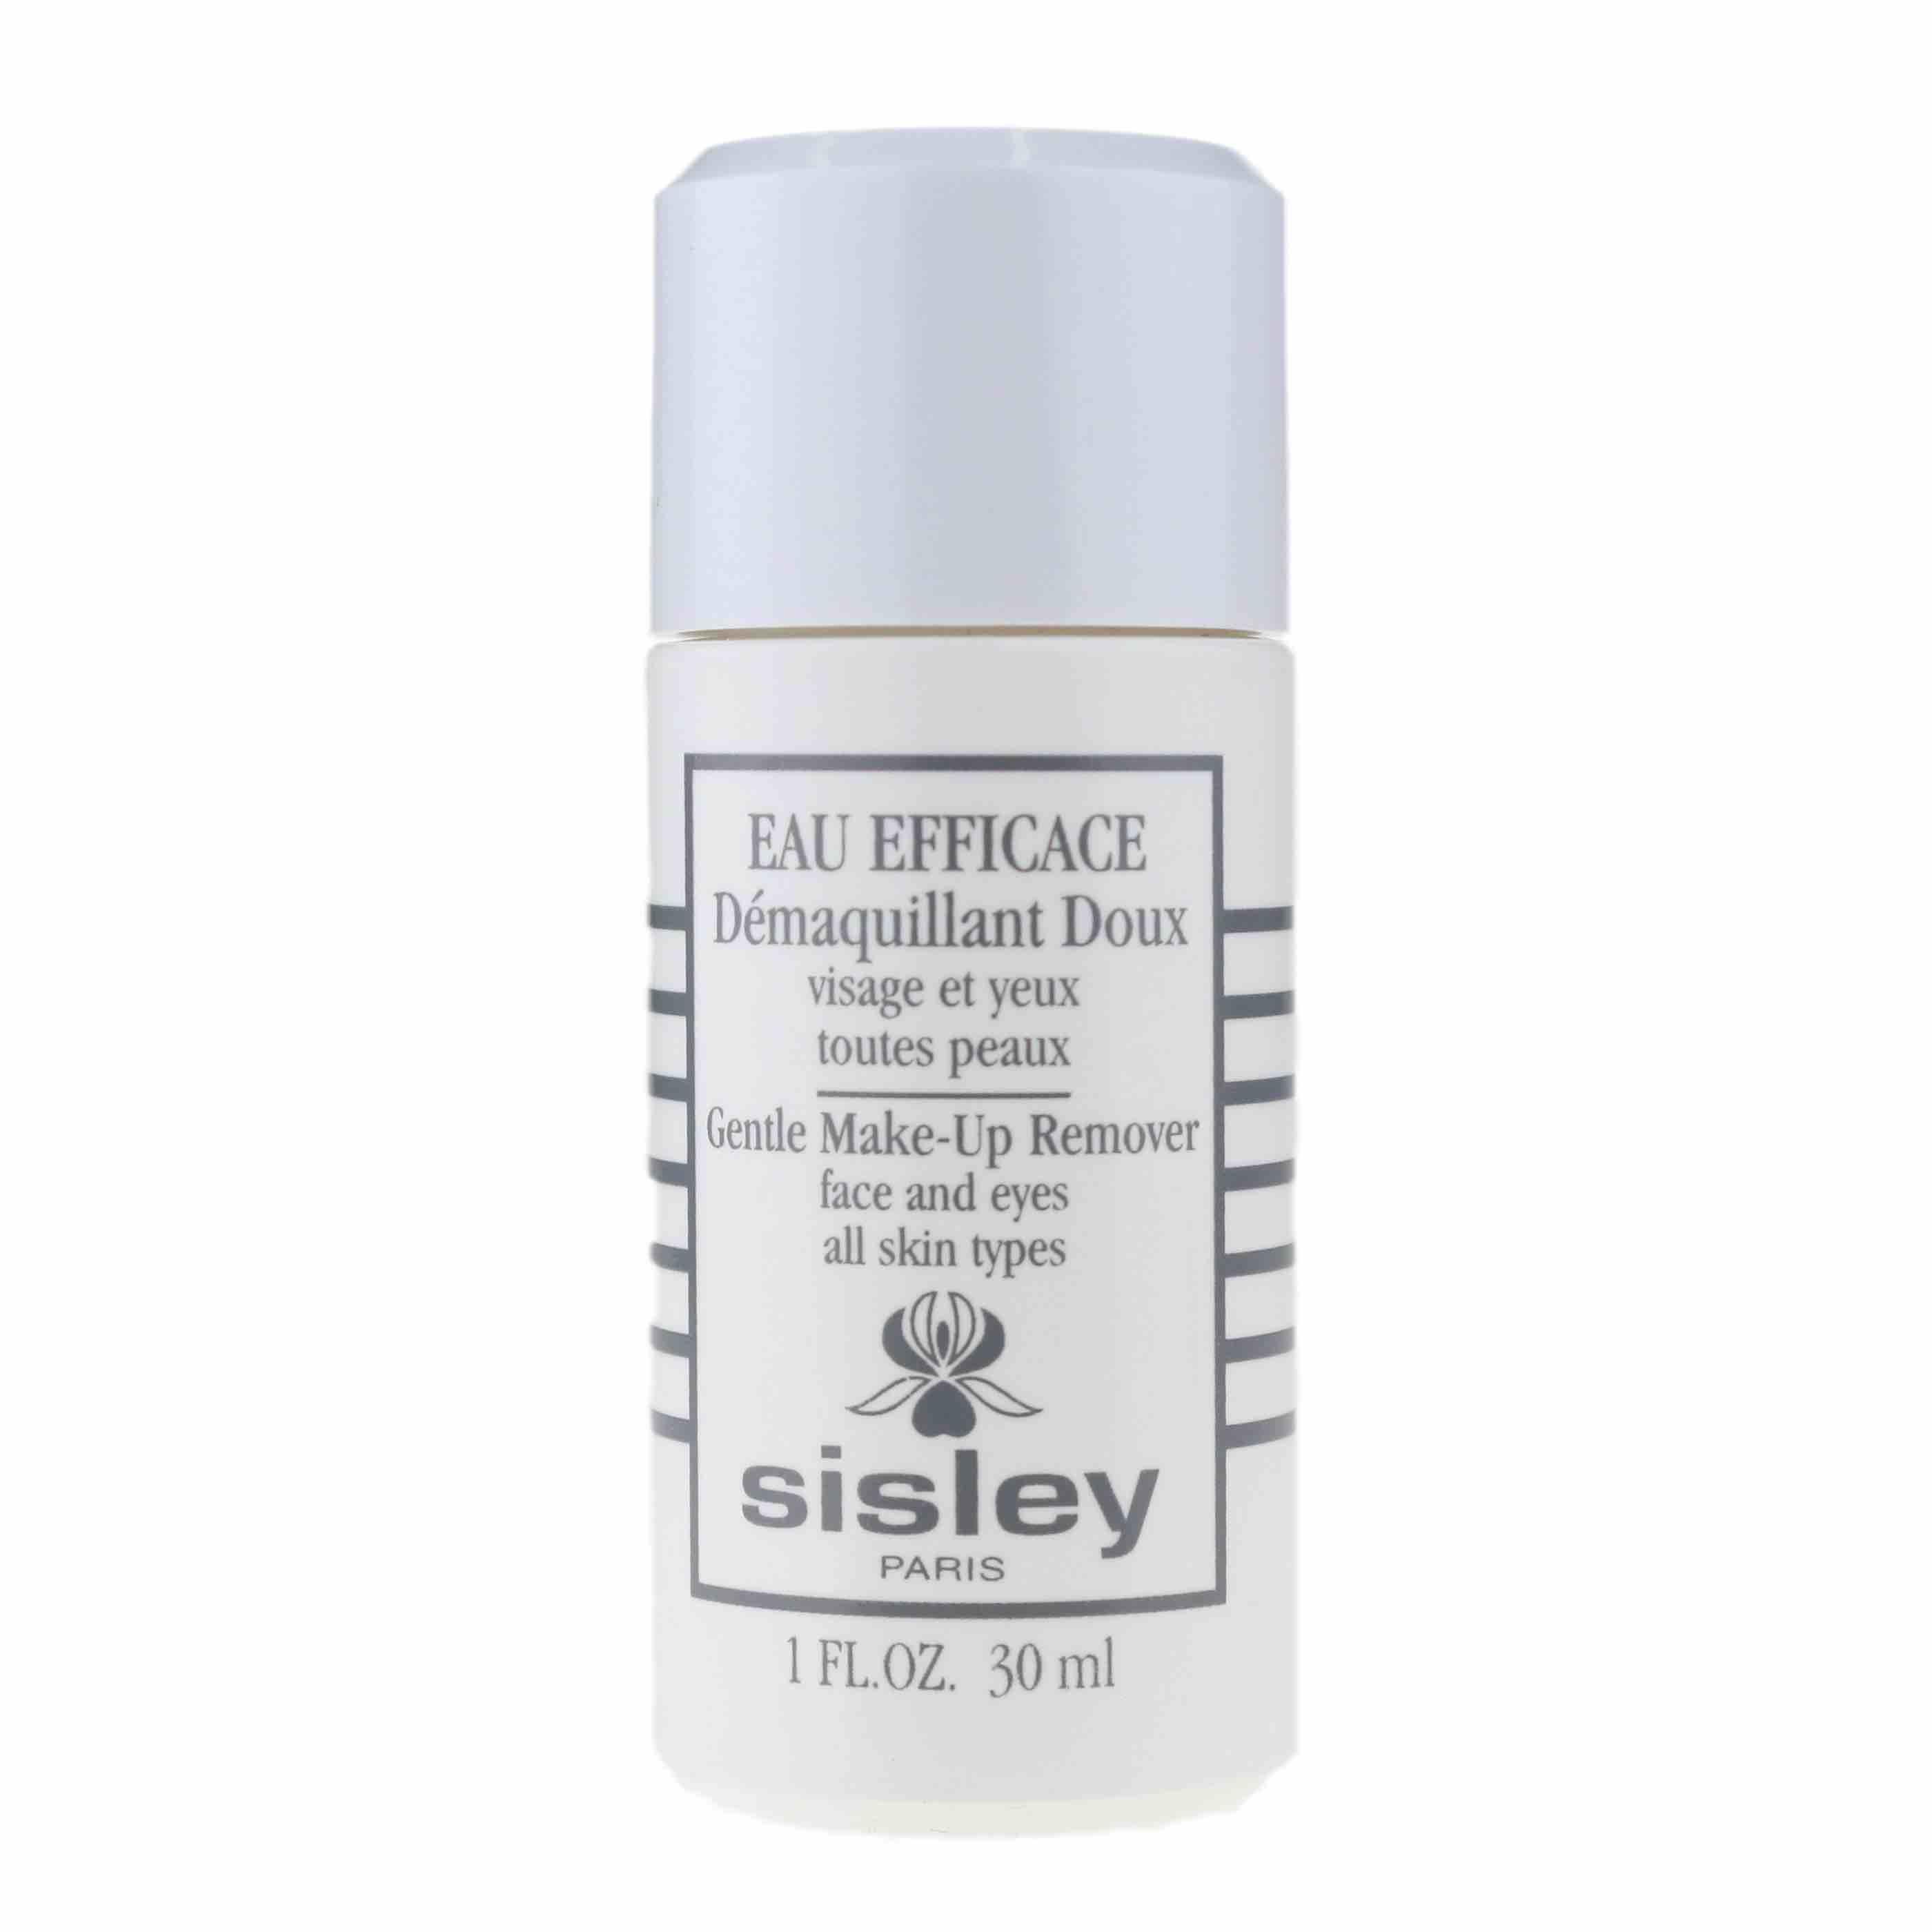 Sisley Paris Eau Efficace Demaquillant Doux Gentle Make-Up Remover 30ml